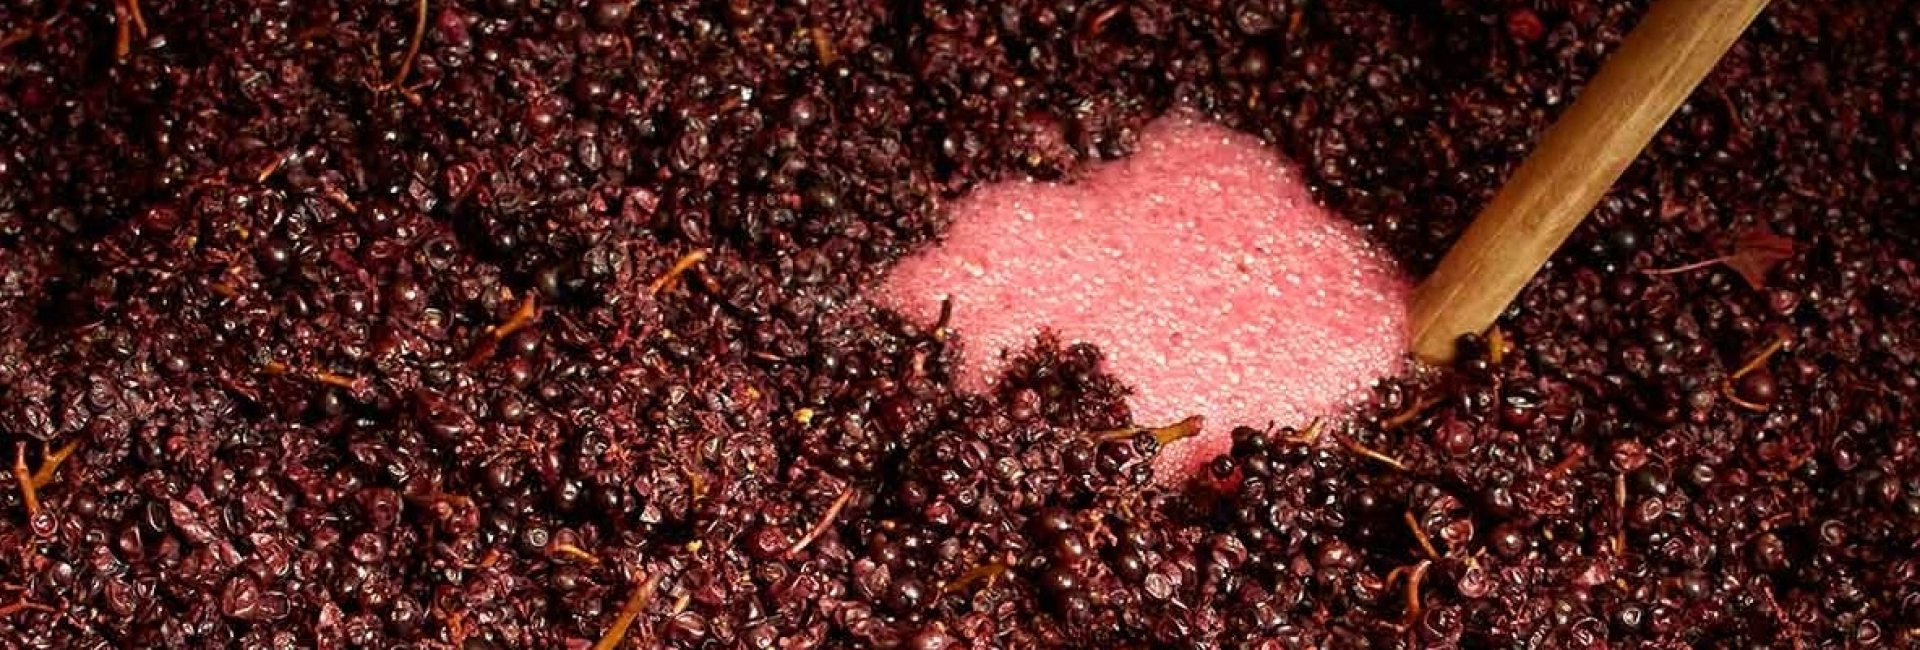 vinificatie van rode wijn